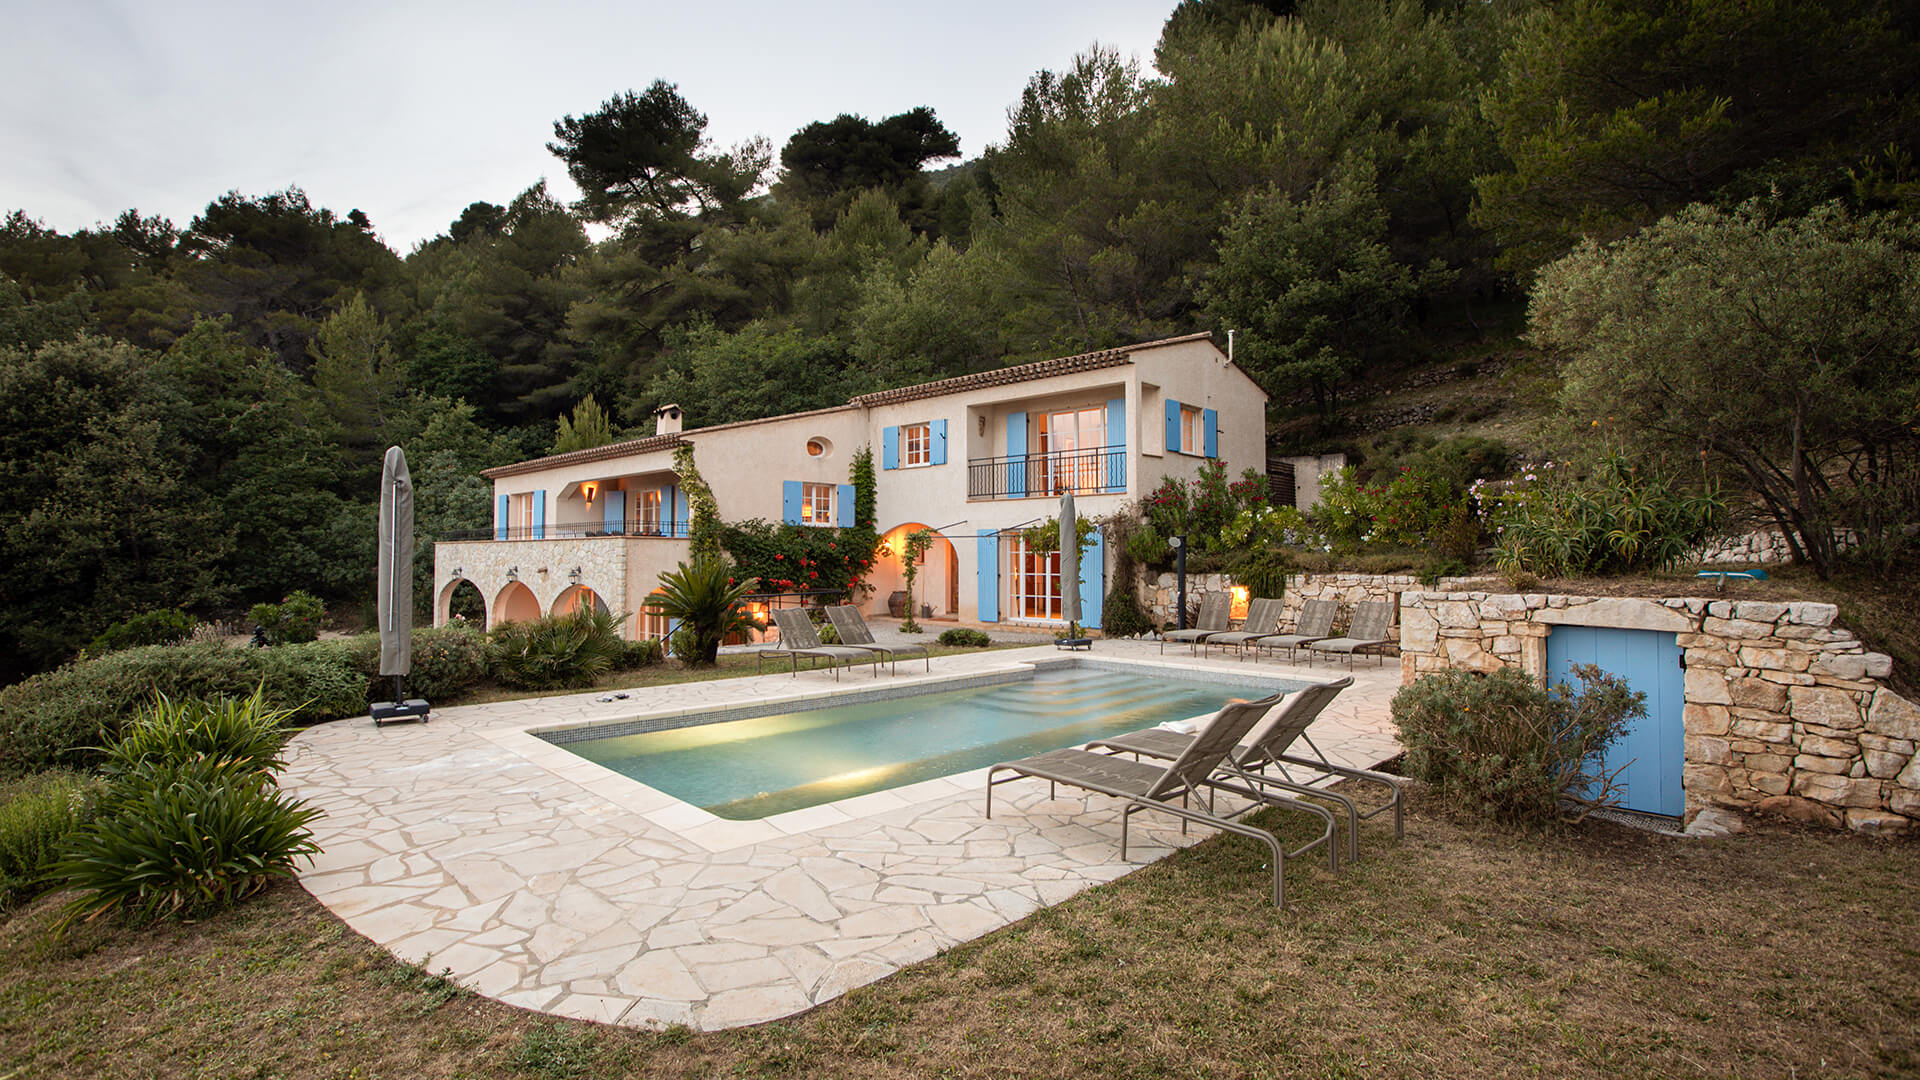 Skøn swimmingpool og dejlige udearealer i Sydfrankrig